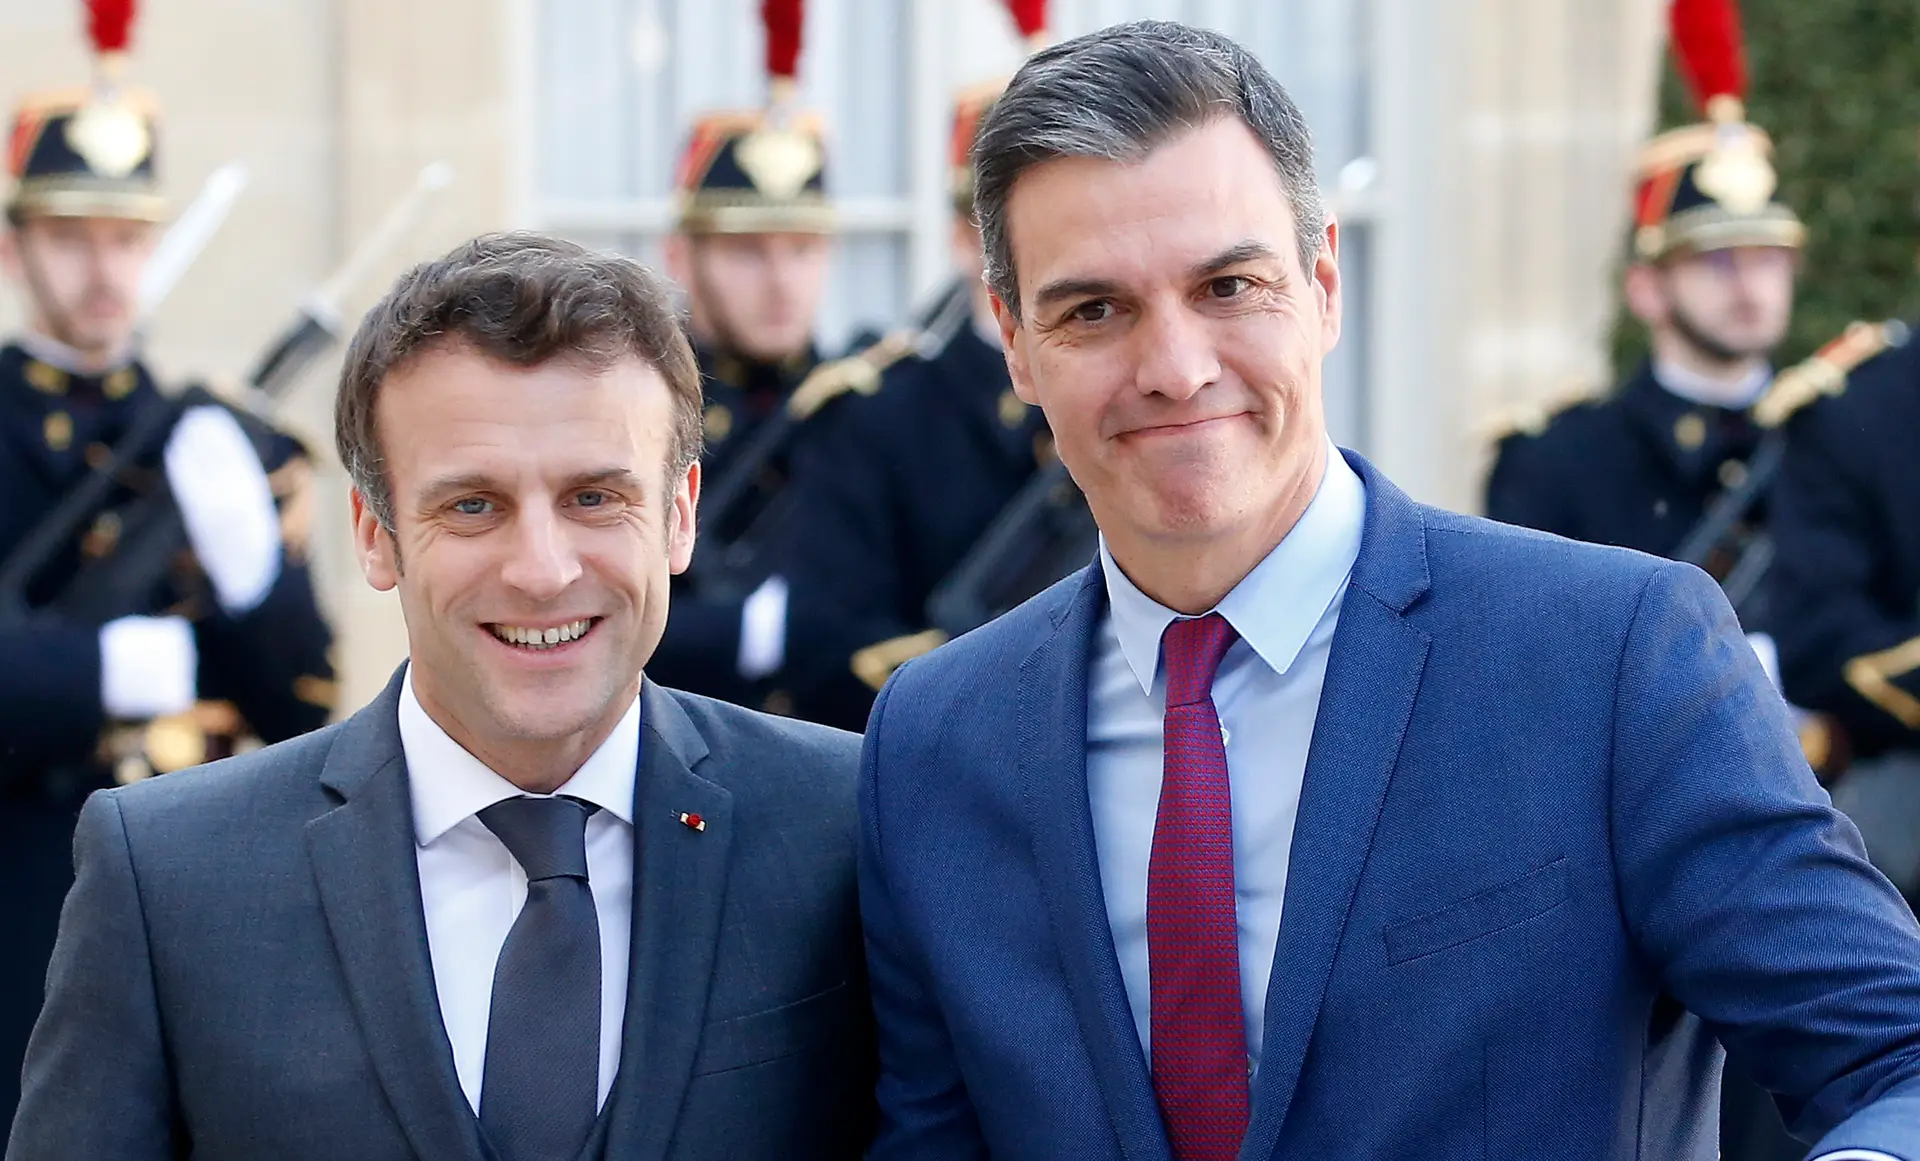 Crise energética: Sánchez pede a Macron respeito por compromissos para mais ligações